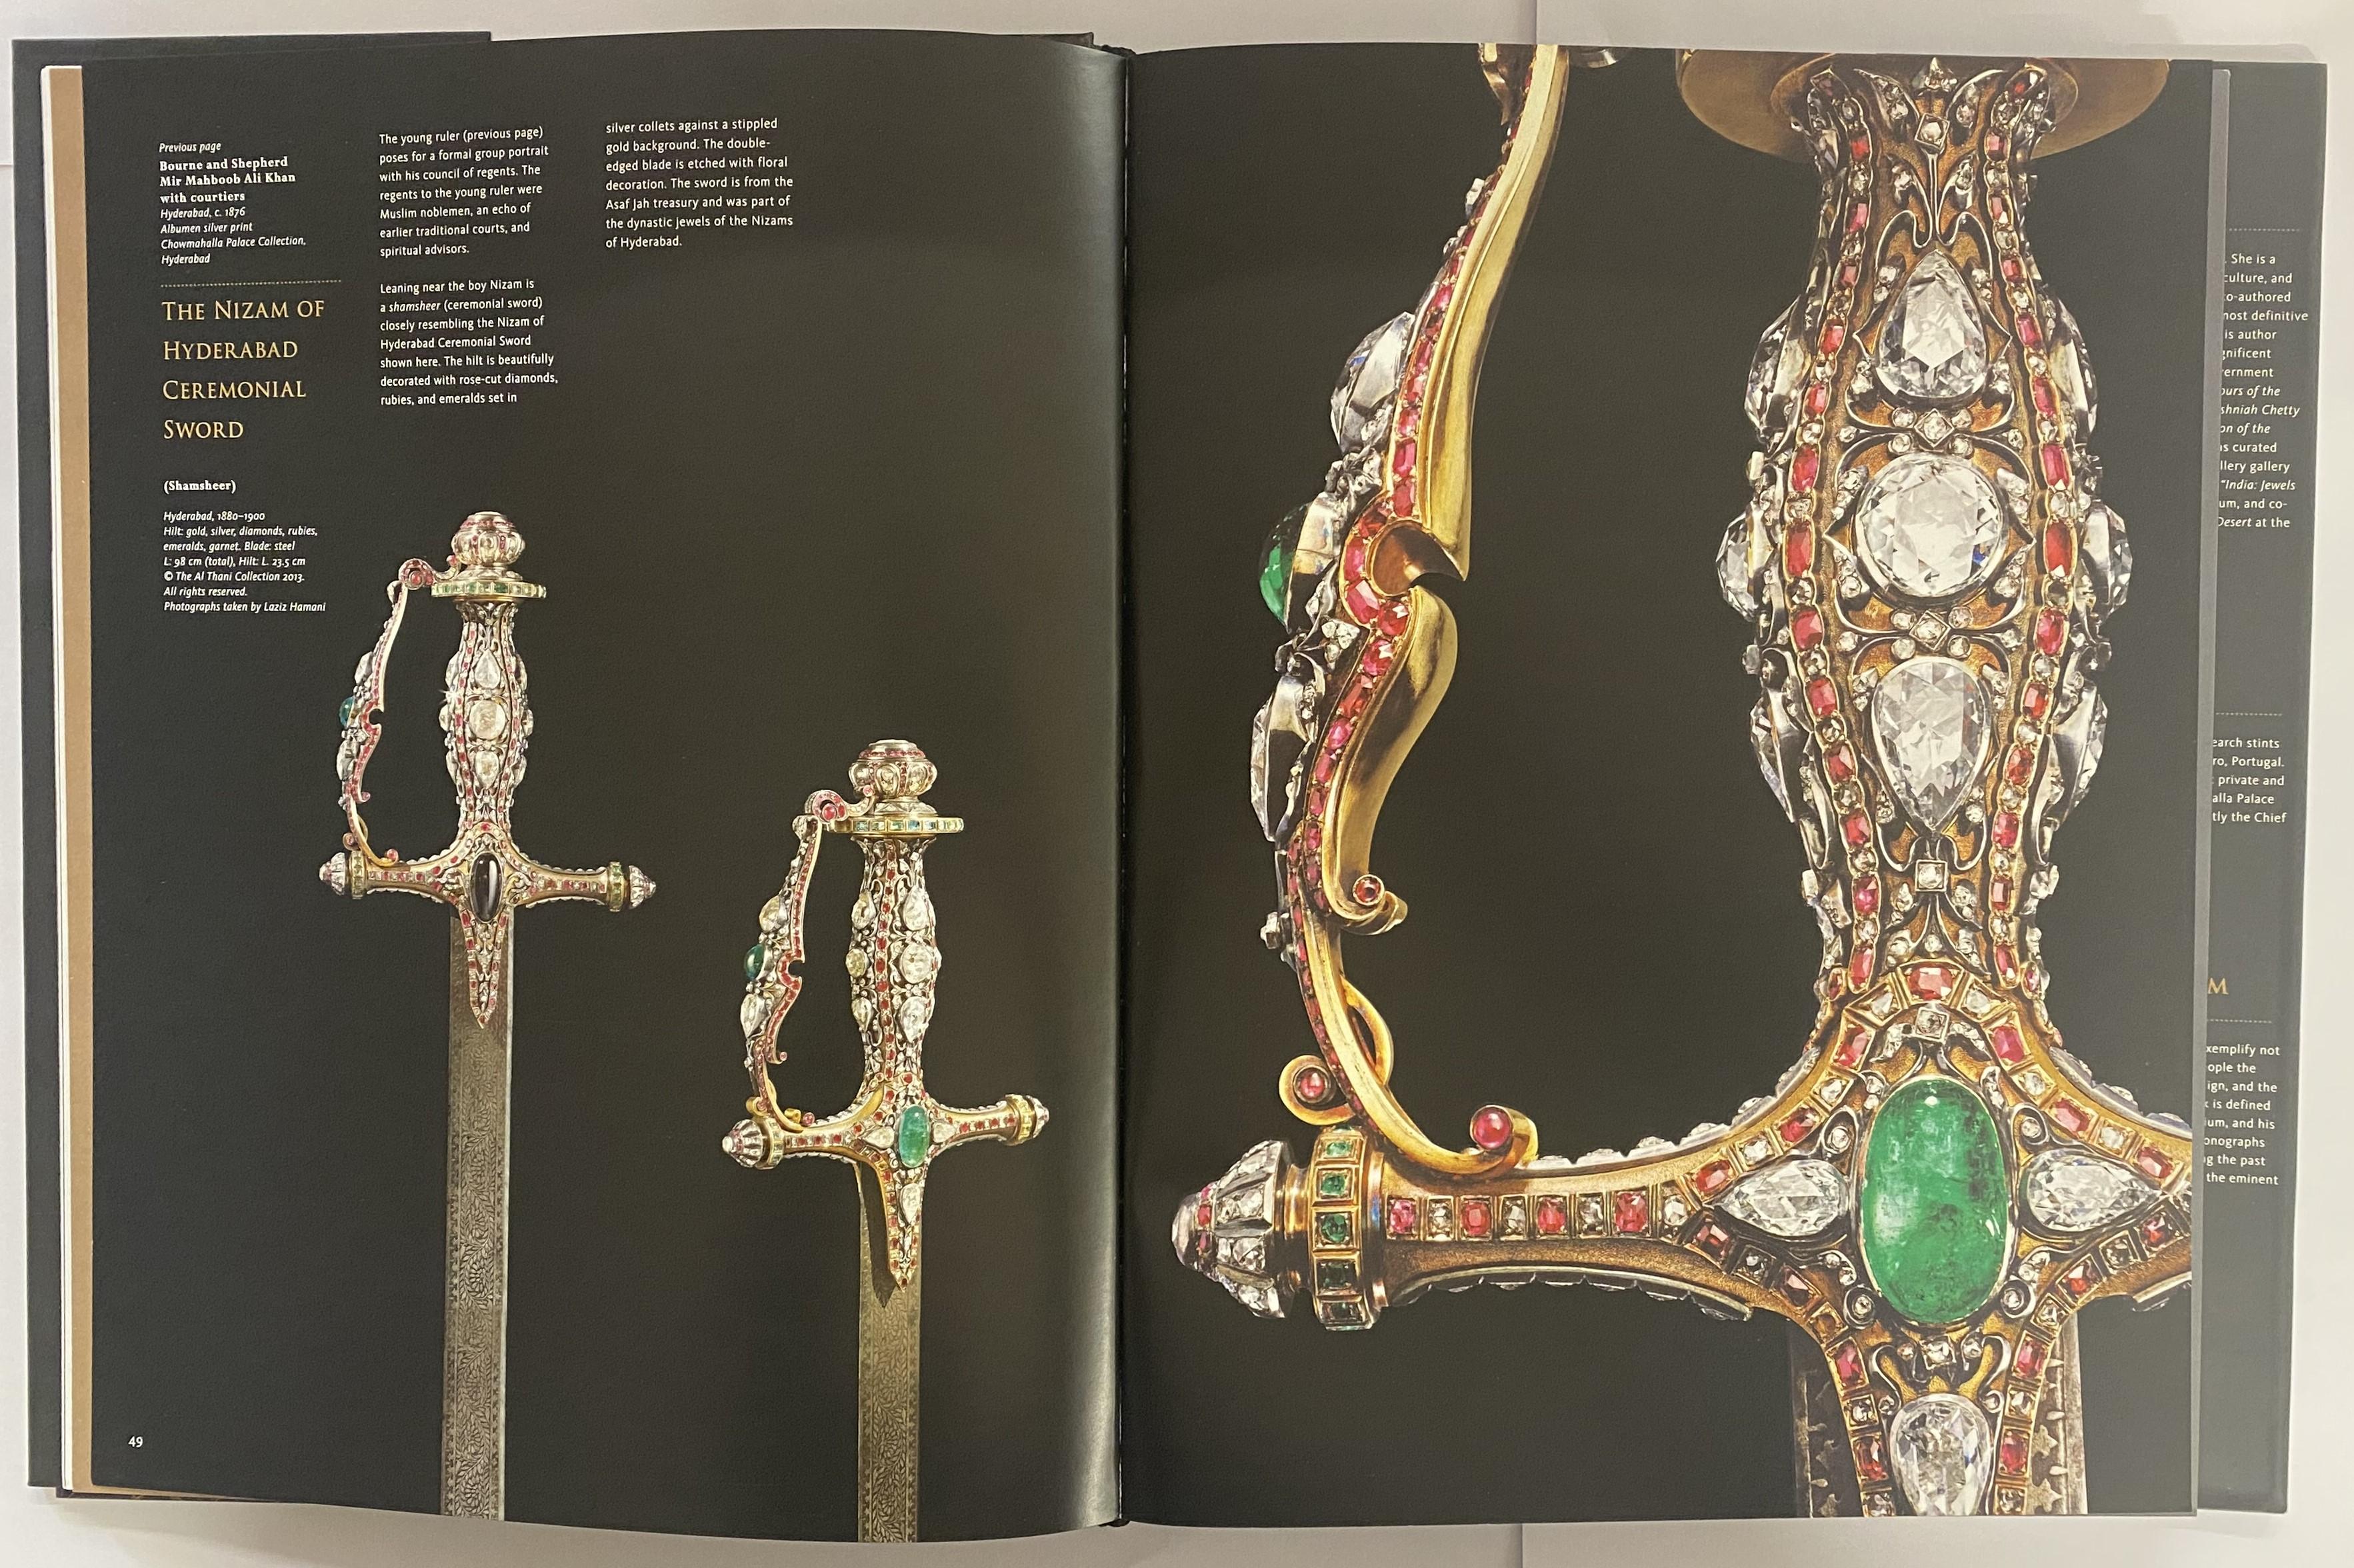 Trésors du Deccan : Jewels of the Nizams & Painted Visions est une série en deux volumes consacrée rétrospectivement aux fabuleux bijoux des Nizams d'Hyderabad, ainsi qu'à une collection séminale de peintures qui a établi le riche patrimoine visuel